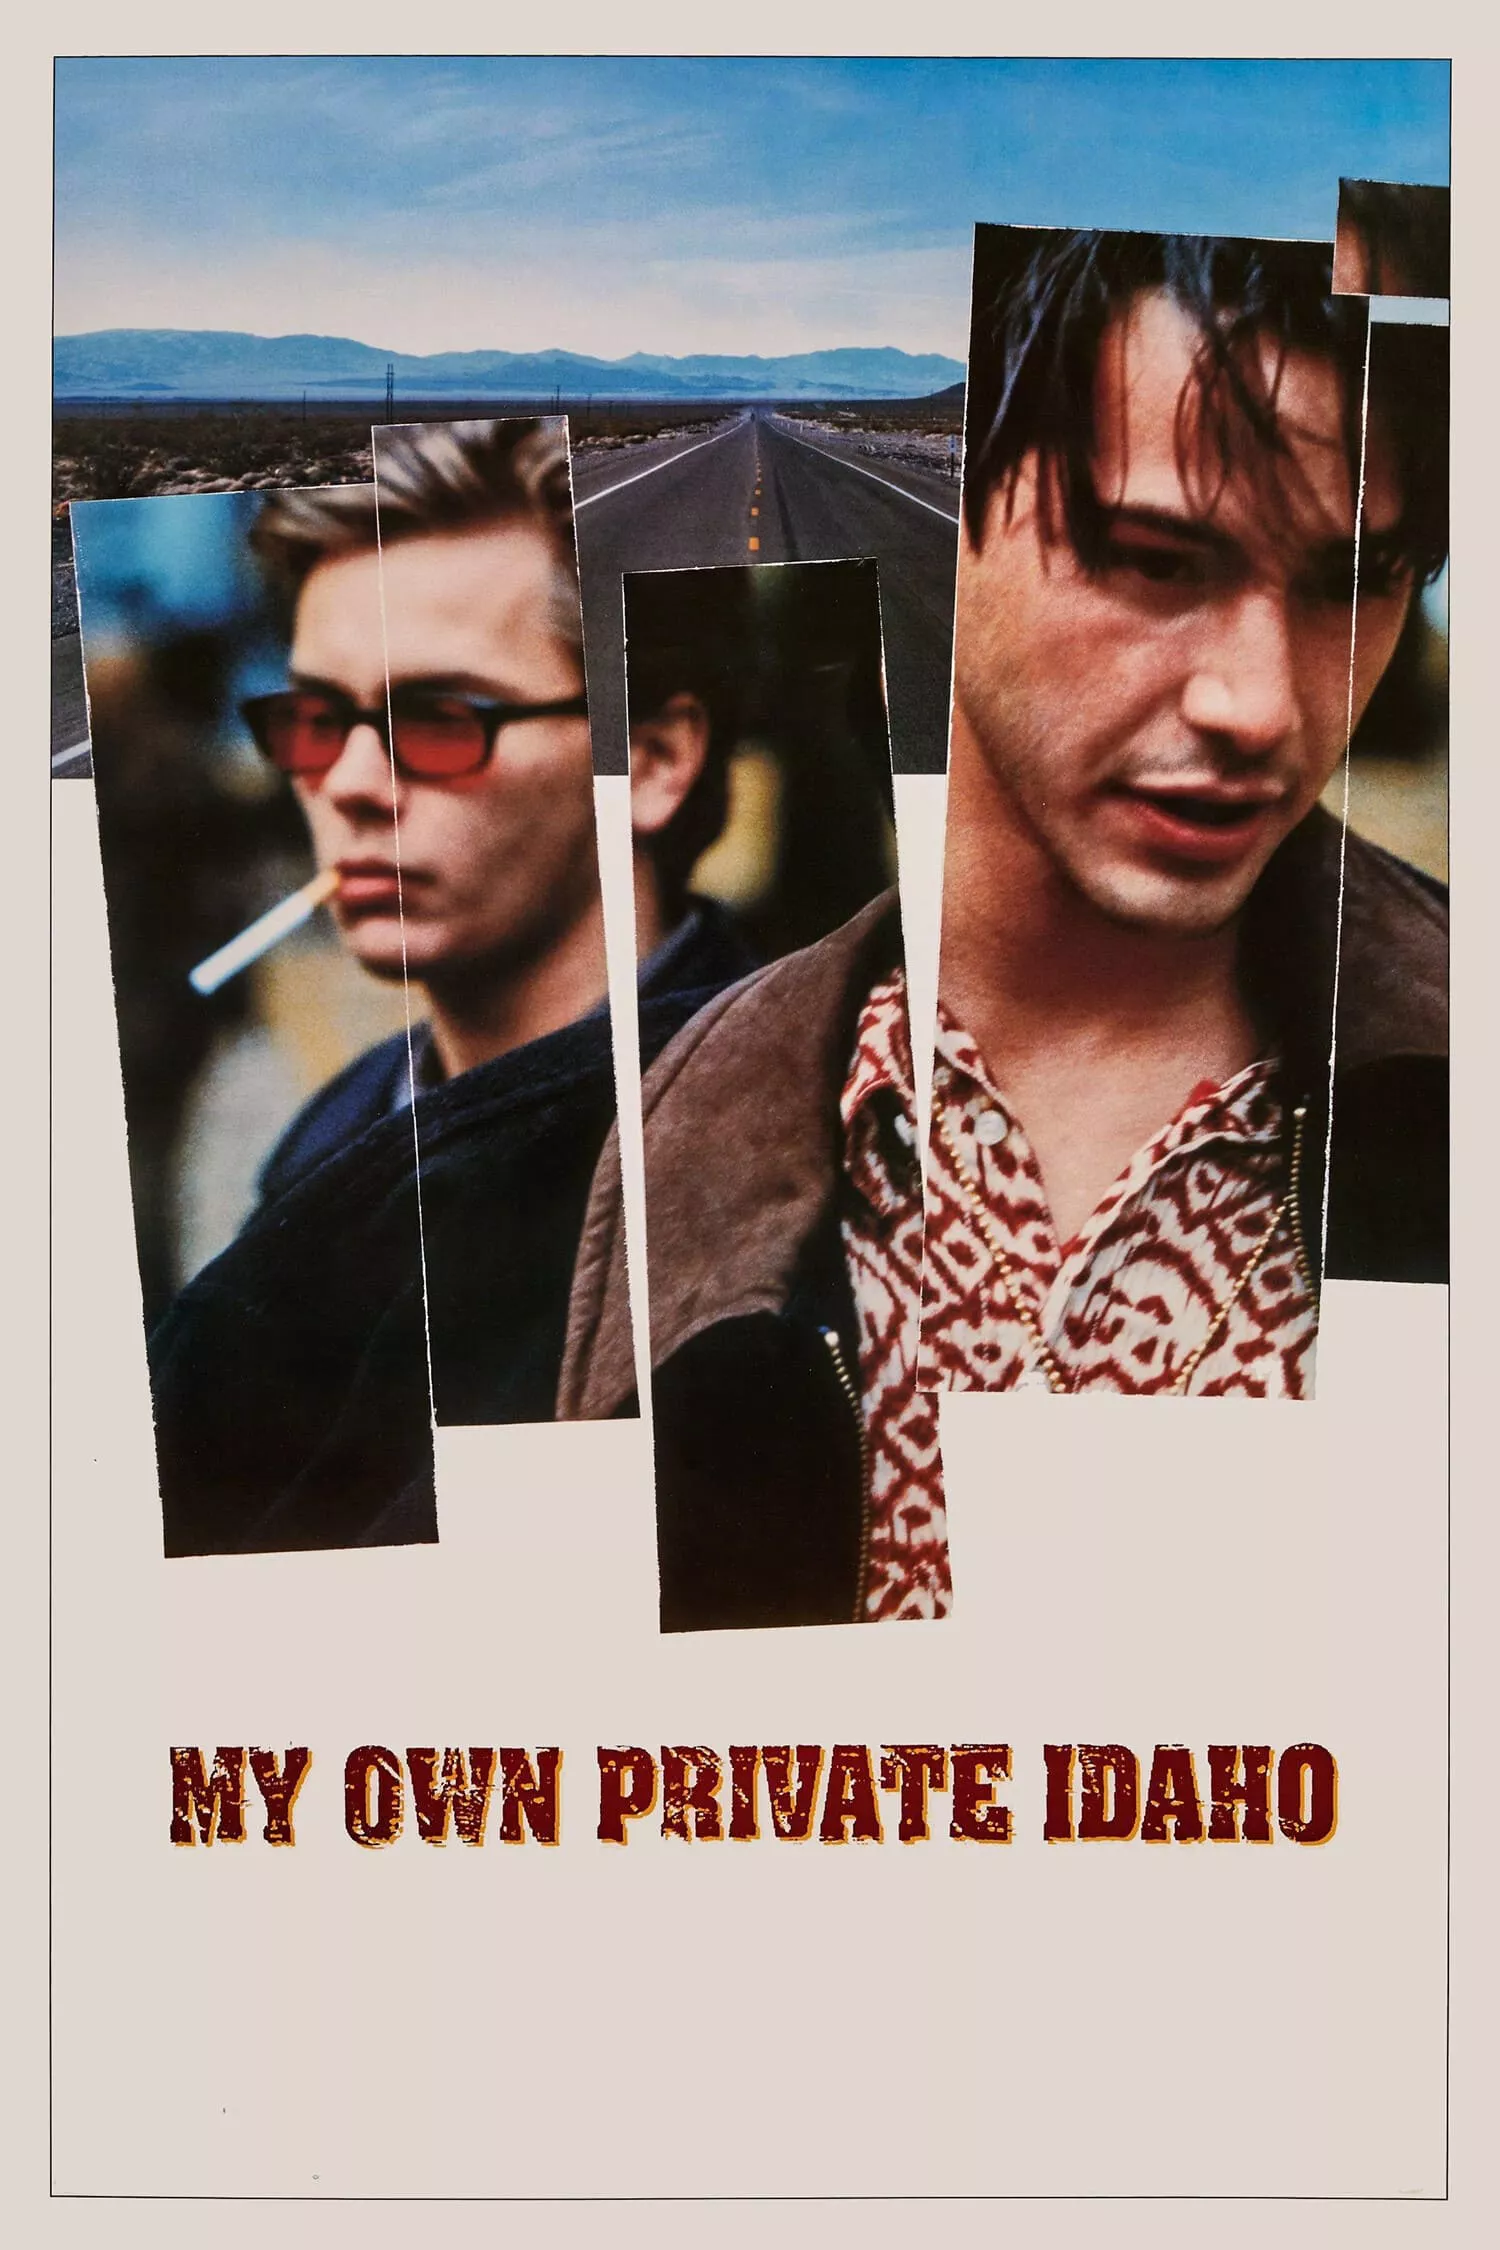 My Own Private Idaho | My Own Private Idaho (1991)